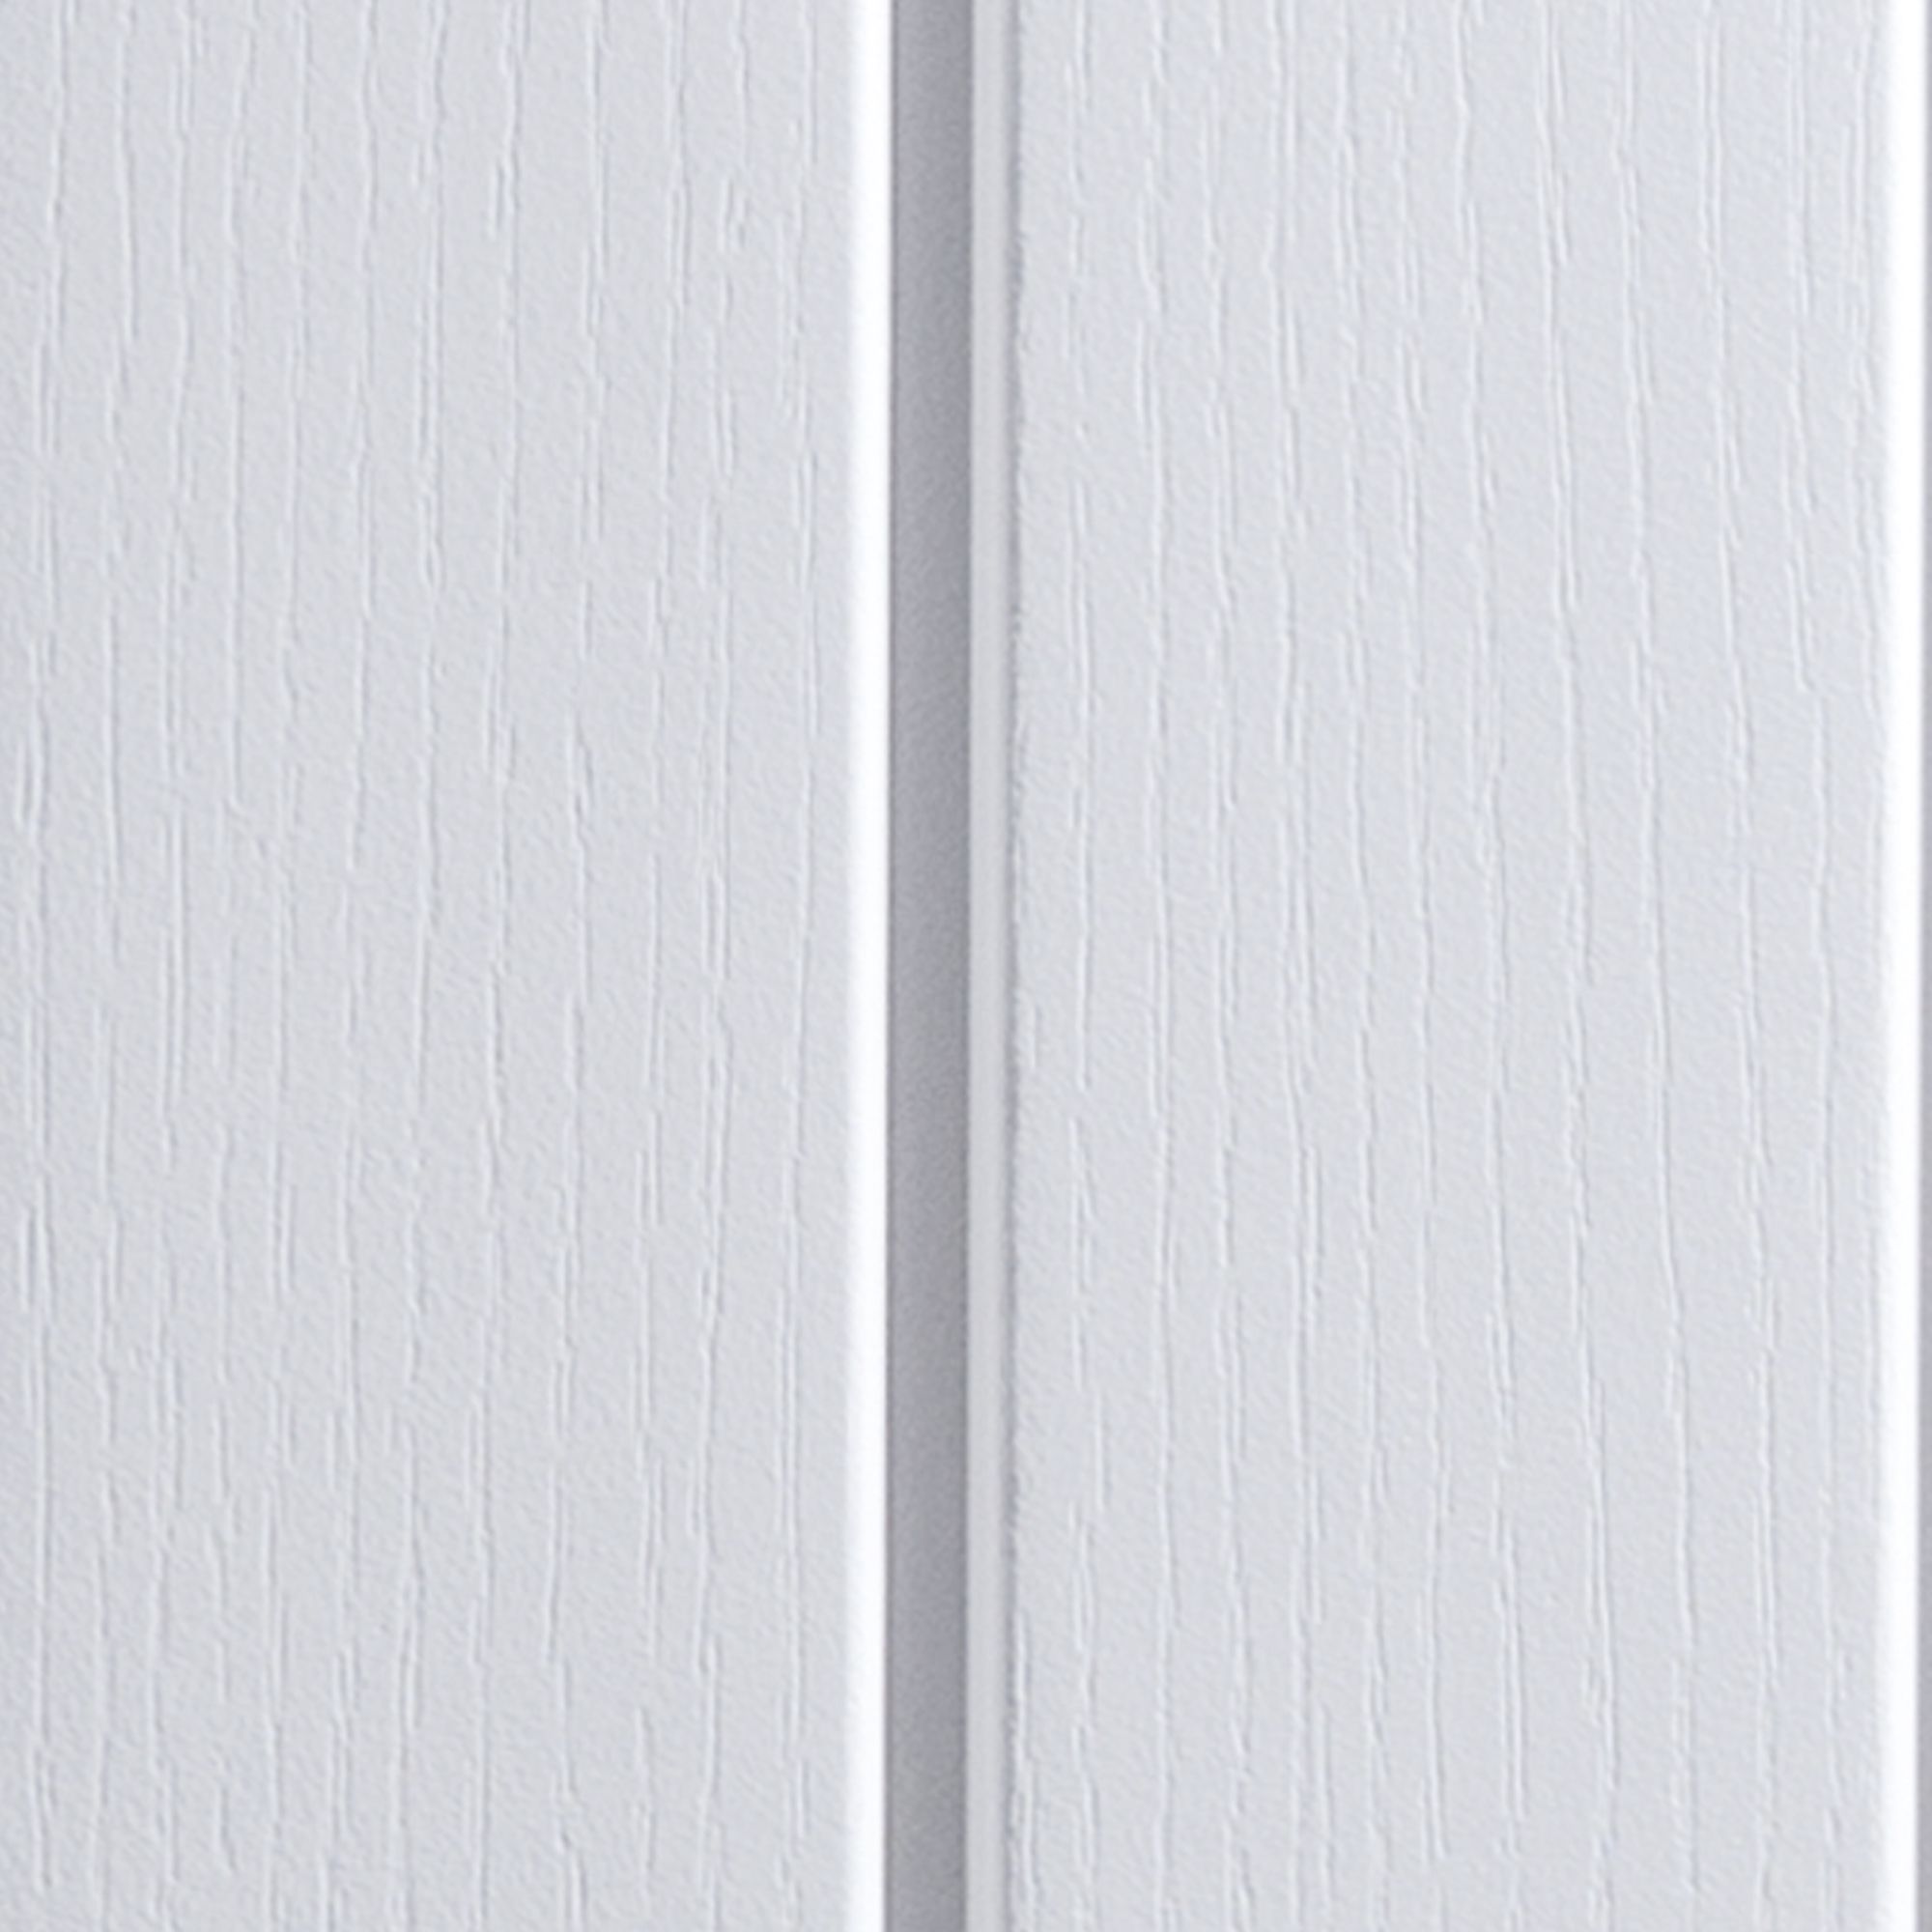 Cottage Unglazed Cottage White Woodgrain effect Internal Door, (H)1981mm (W)838mm (T)35mm